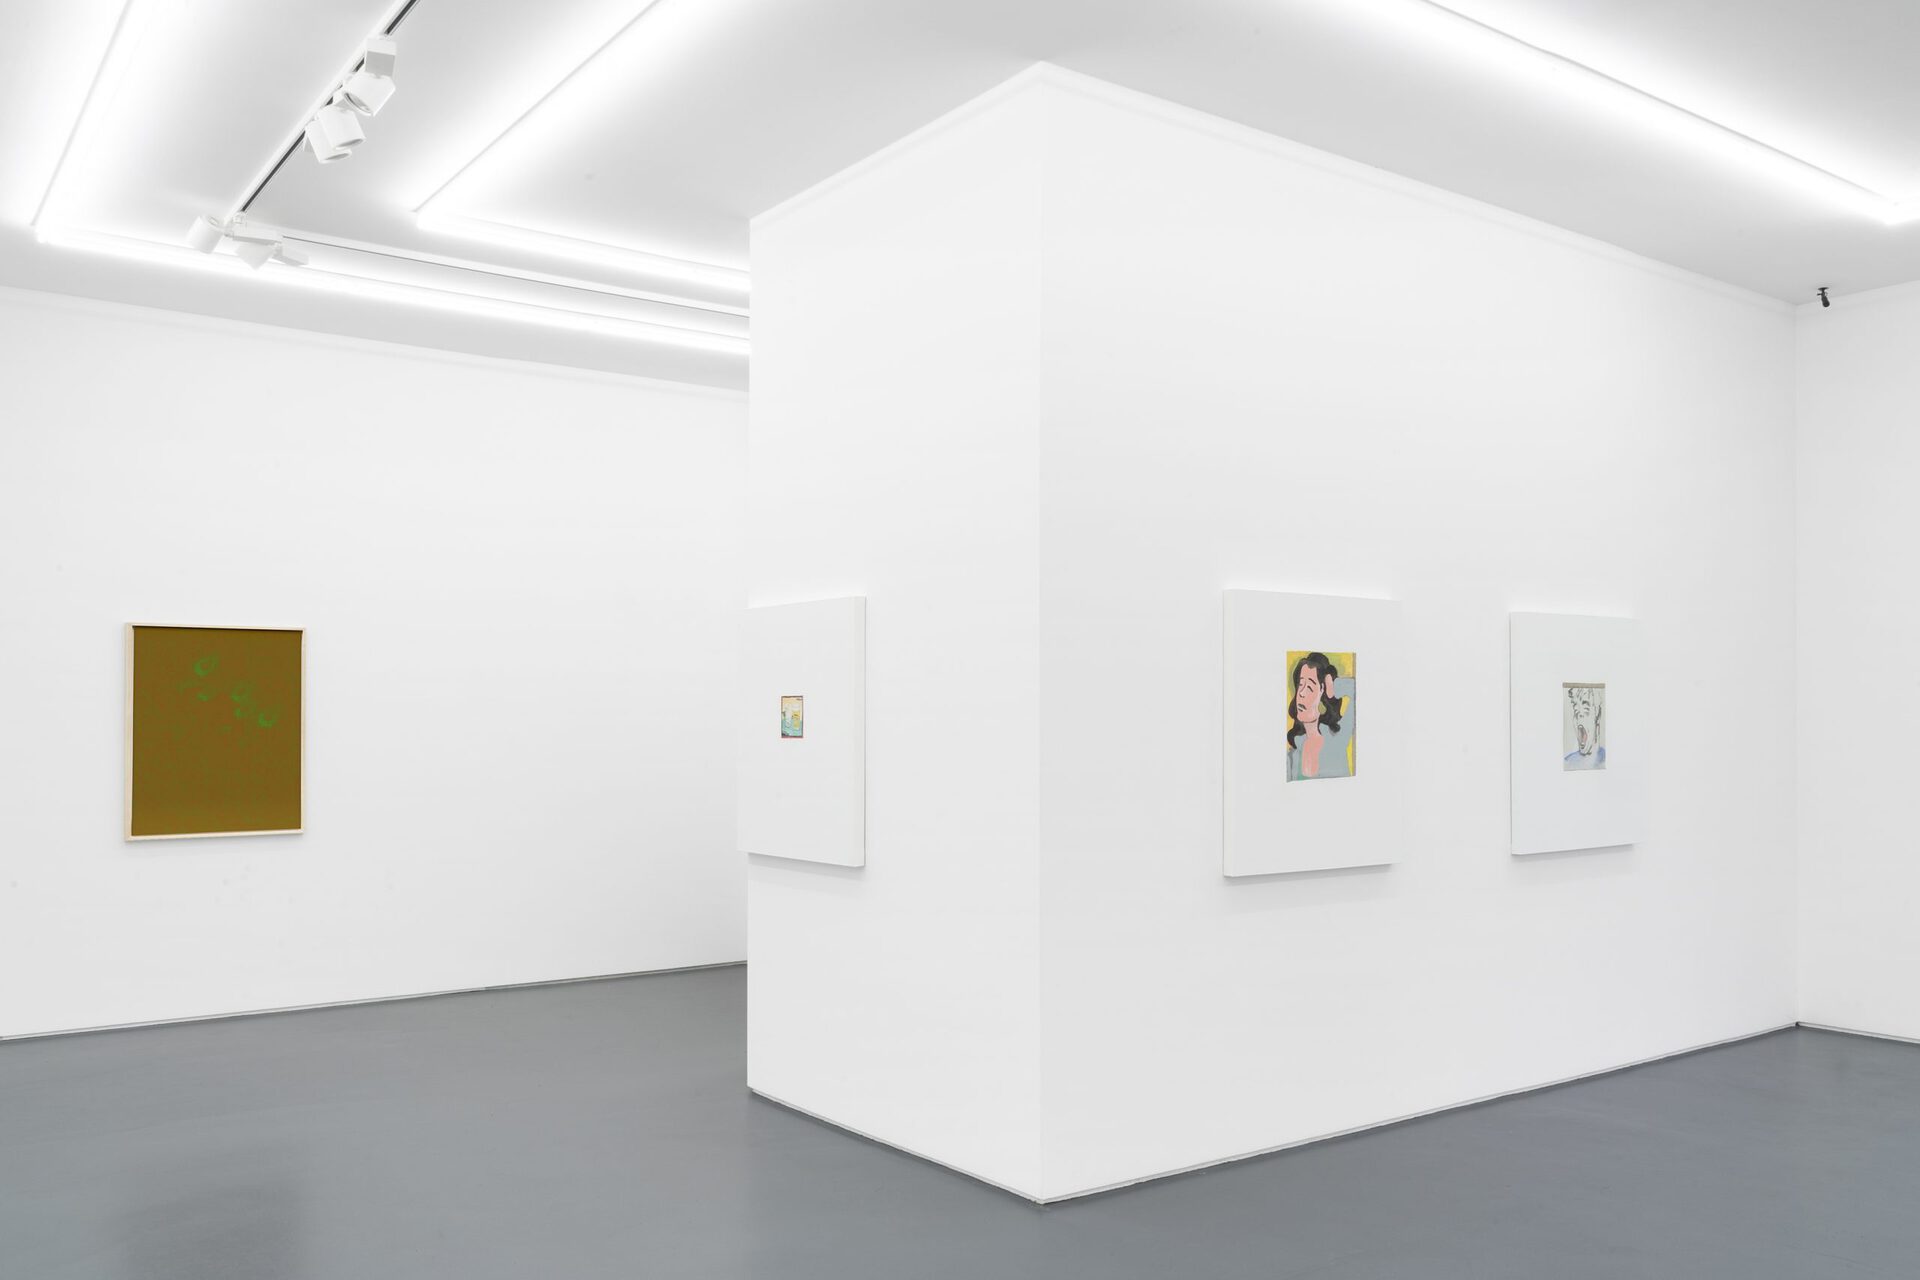 Installation view, Lisa Holzer; John Matthew Heard, dependent, Mountains, Berlin, 2021